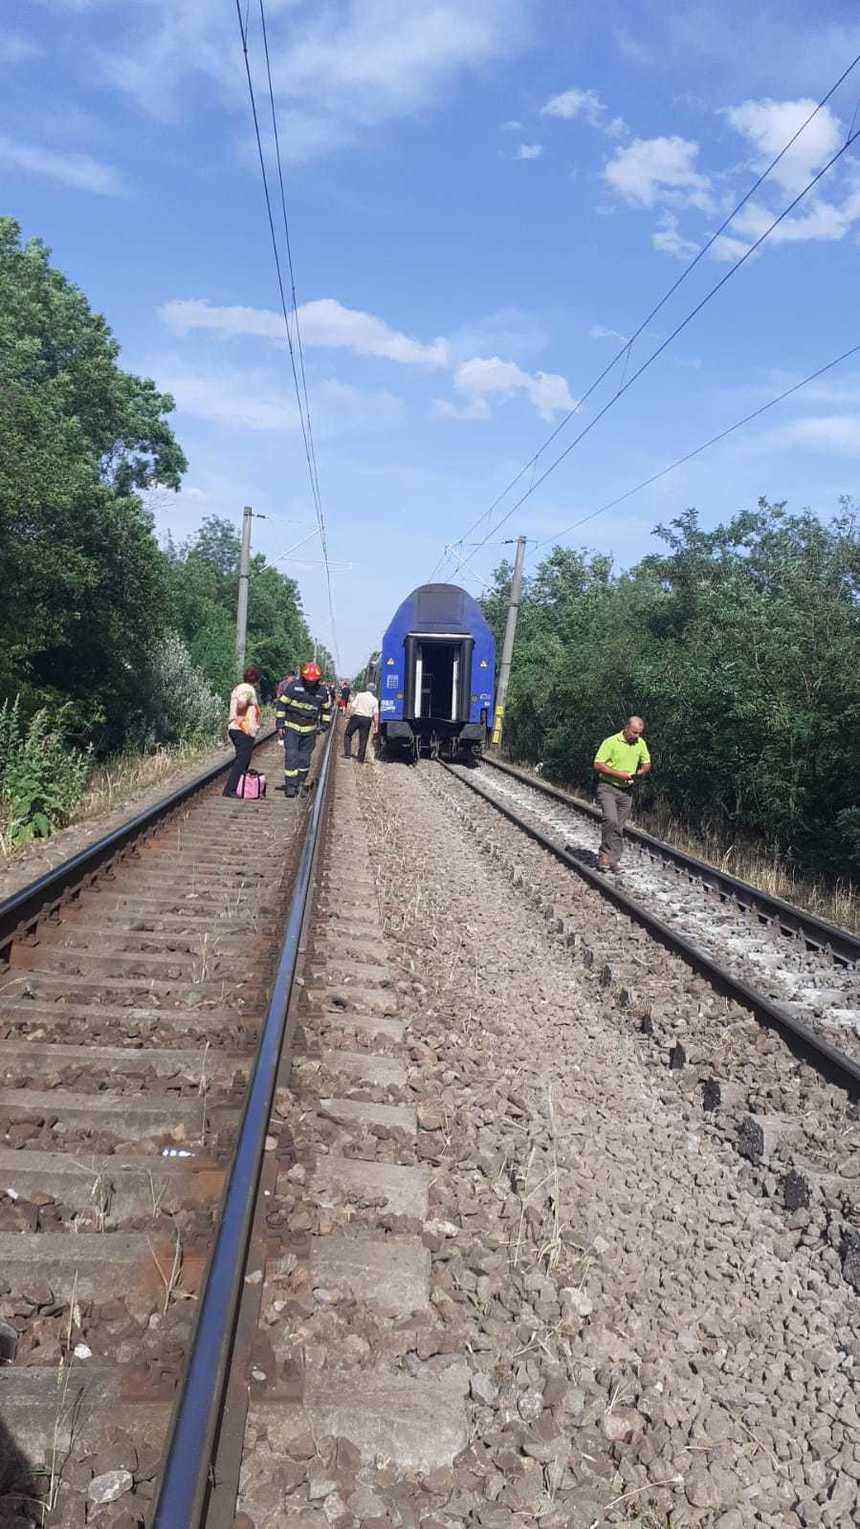 UPDATE - Dâmboviţa: Incendiu la o locomotivă în gara din localitatea Ciocăneşti / S-au autoevacuat aproximativ 200 de persoane / Precizările CFR / Trenul va ajunge la destinaţie cu întârziere de 75 de minute